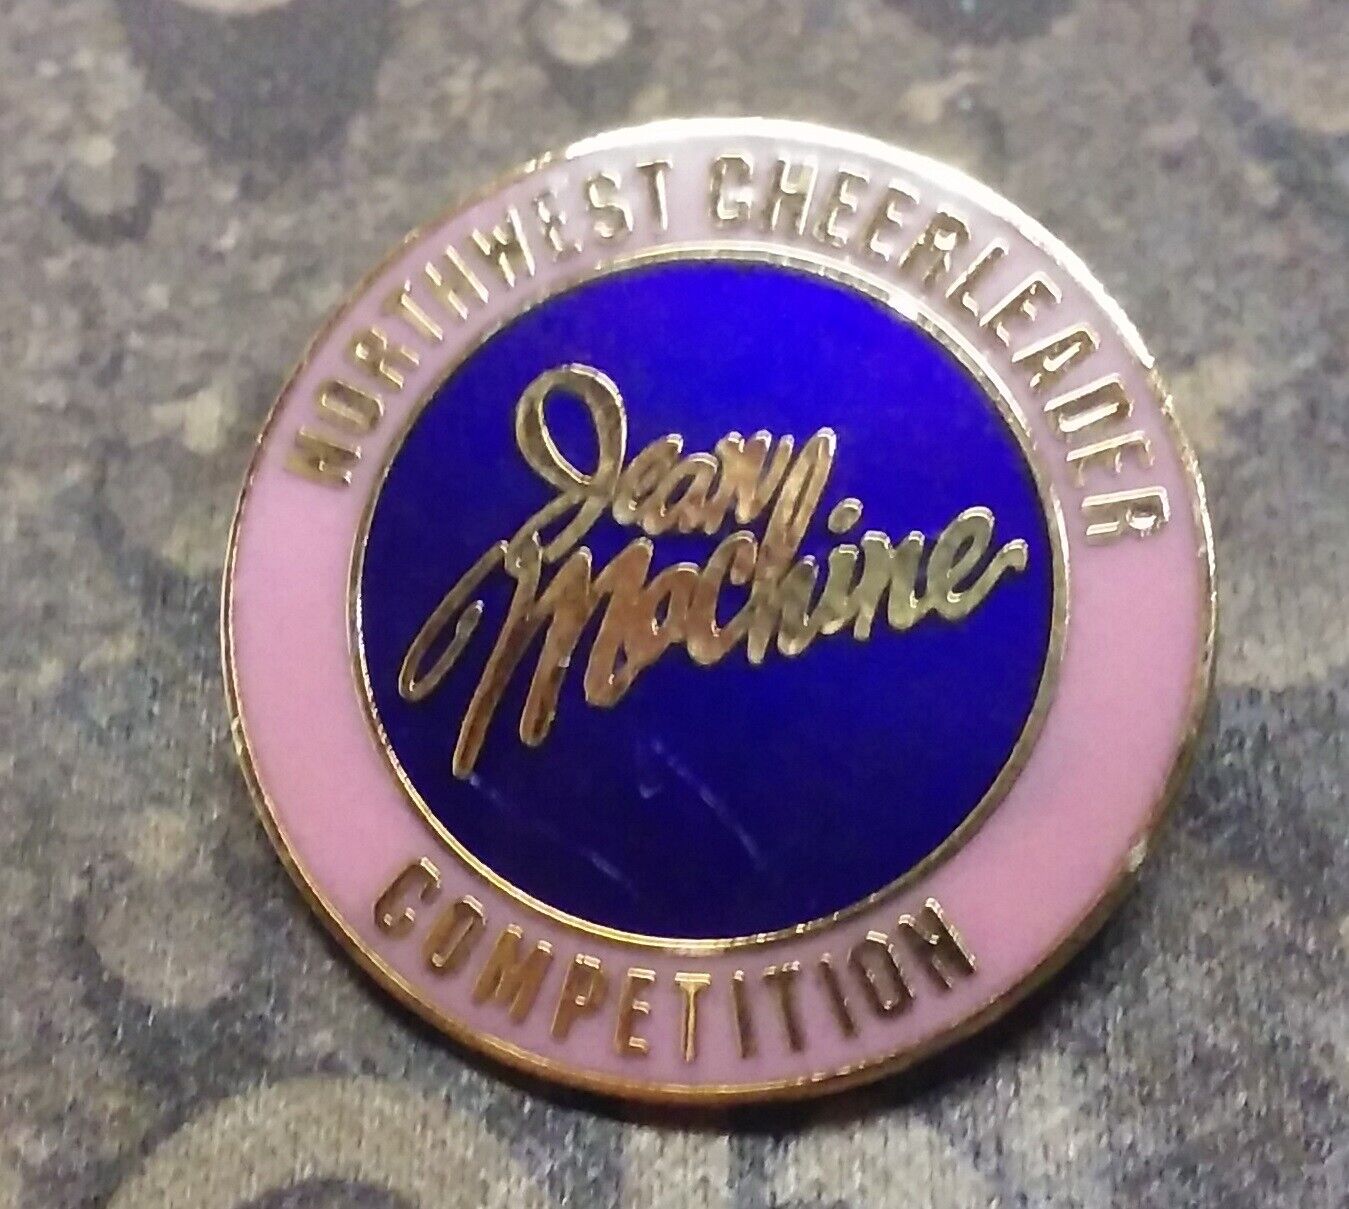 Northwest Cheerleader Competition Jean Machine vintage pin badge 